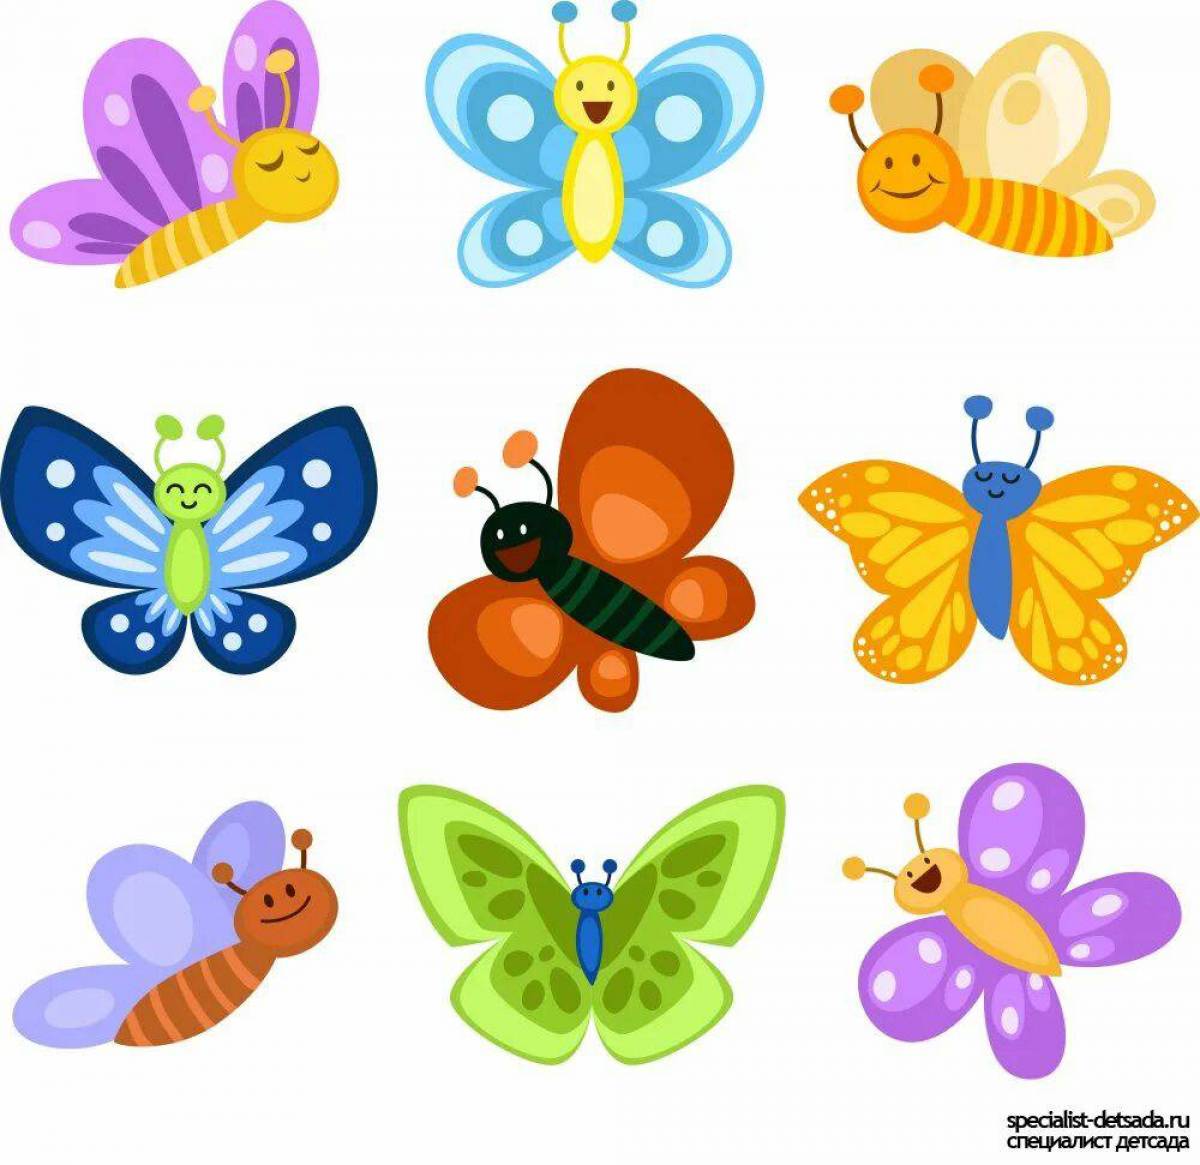 Группа насекомые бабочка. Бабочка рисунок. Бабочки мультяшные. Бабочки для украшения группы в детском саду. Бабочки детские.